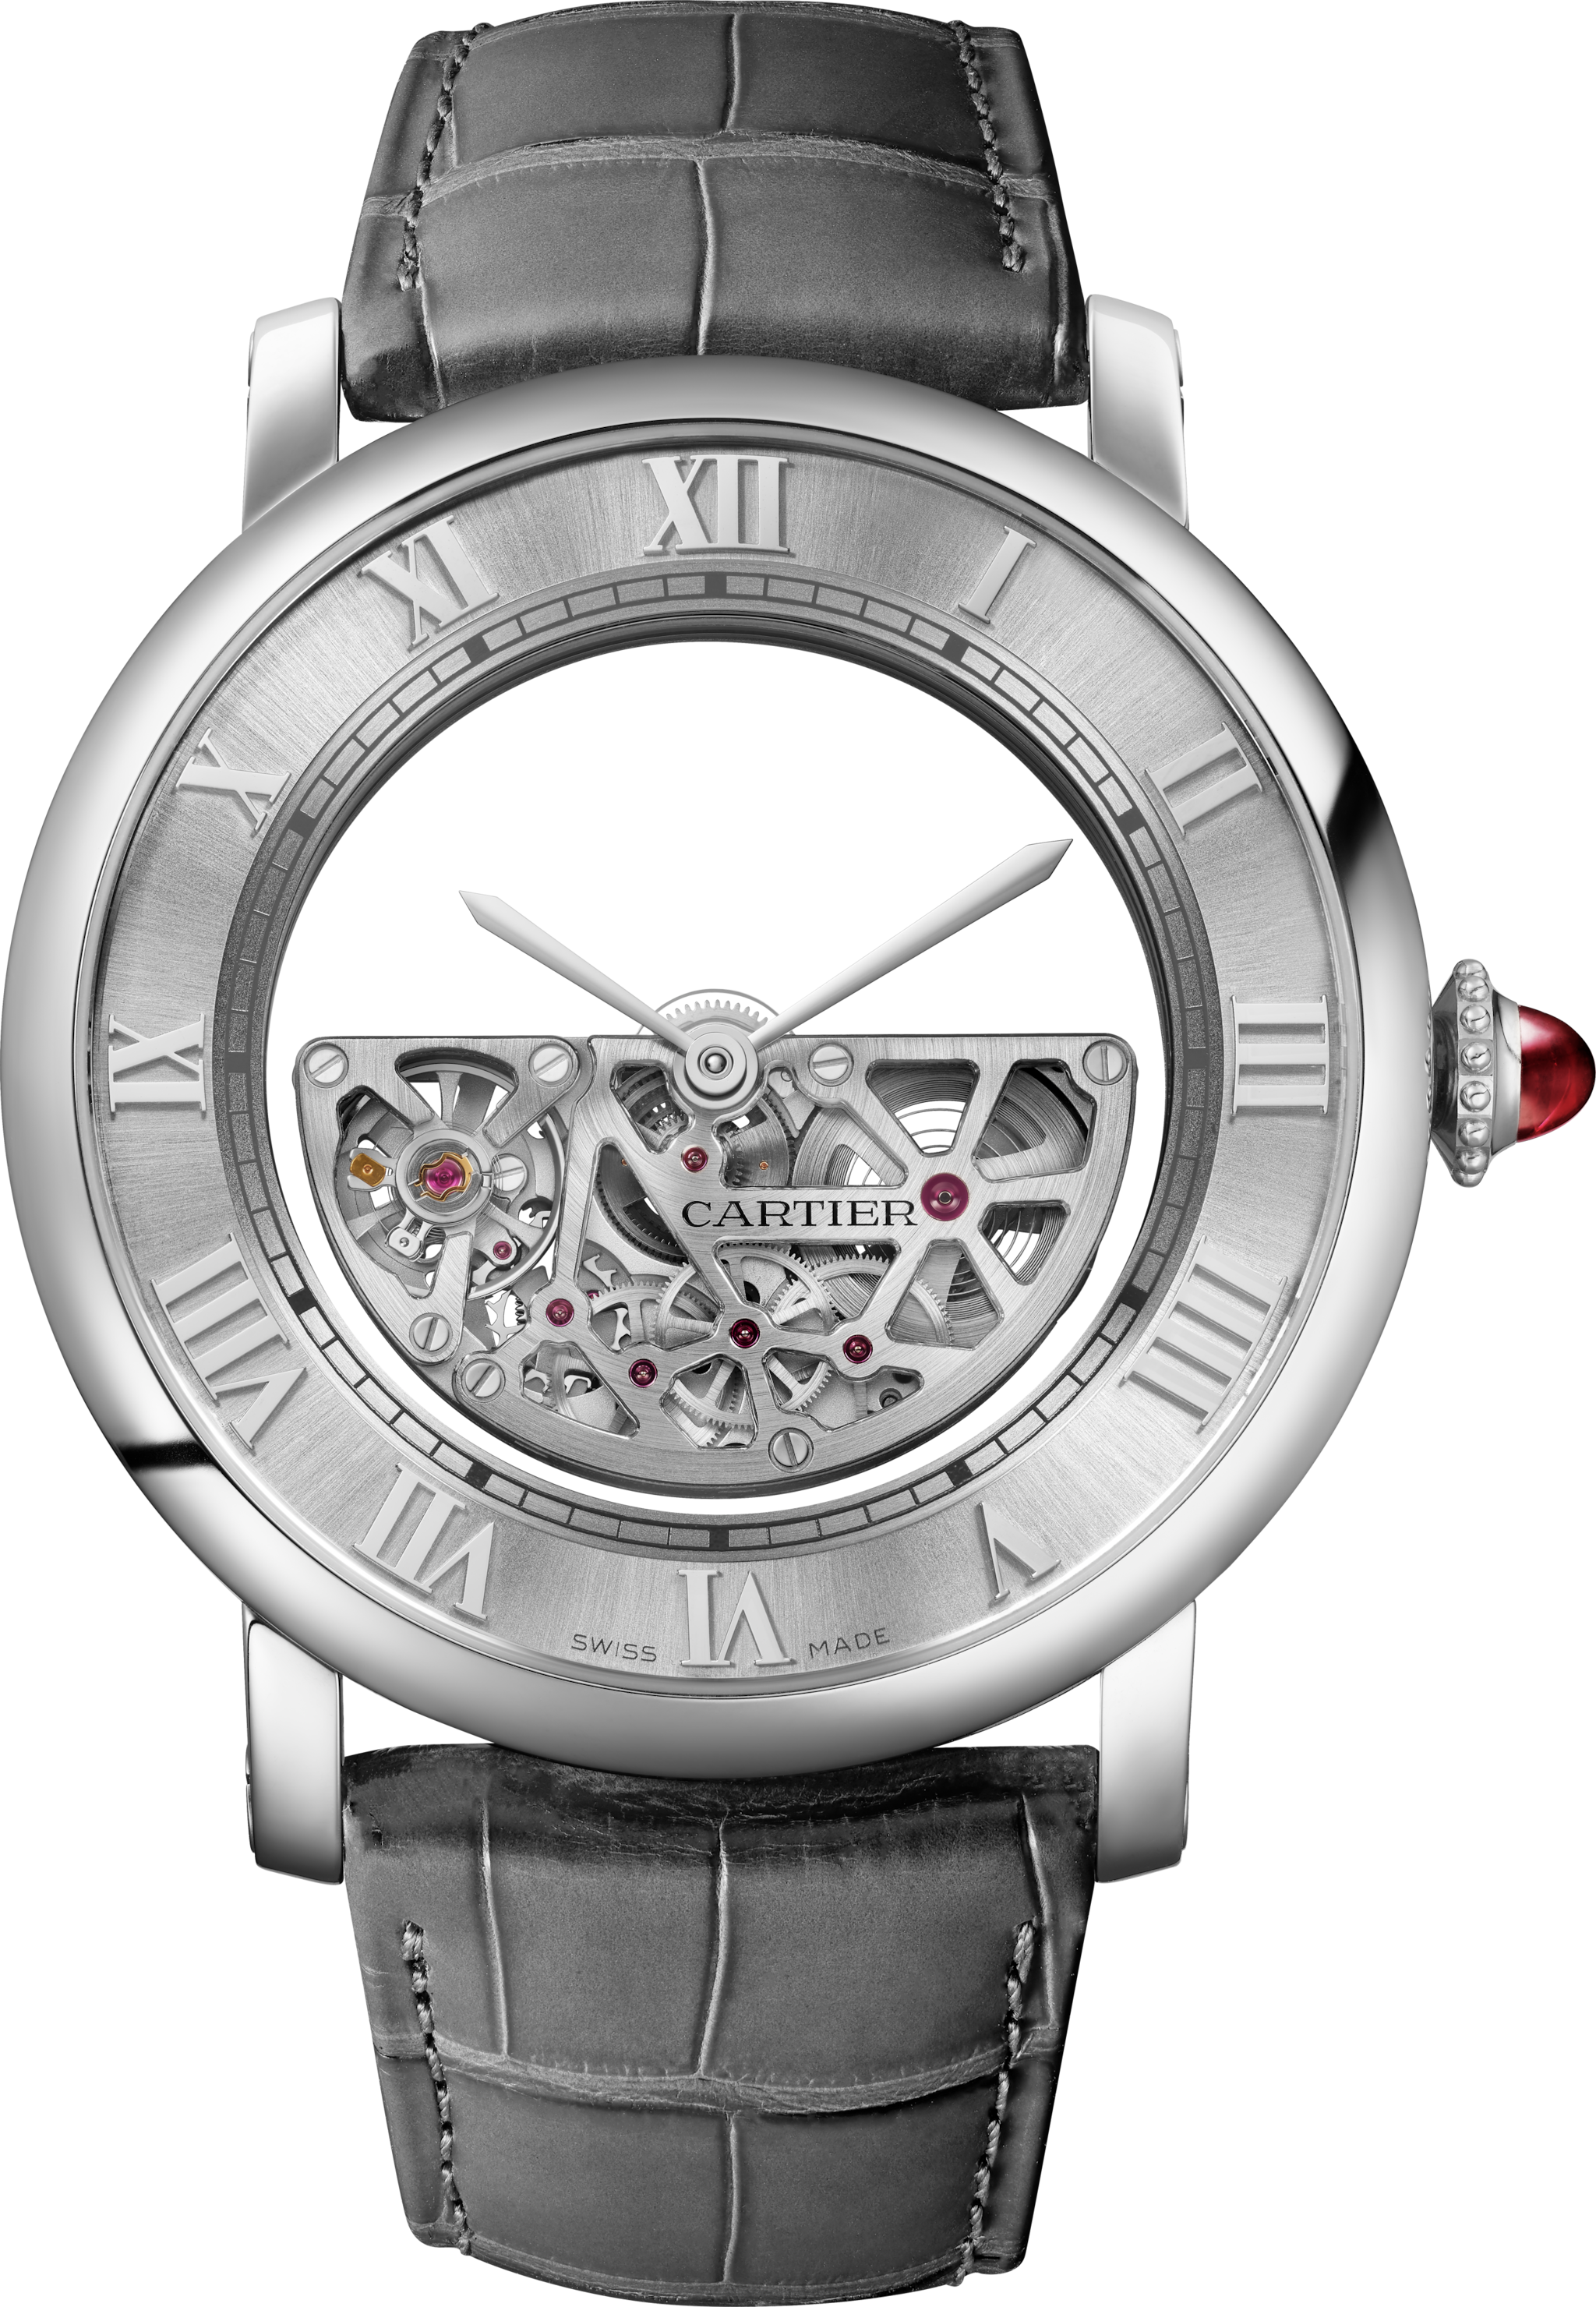 Reloj Rotonde de Cartier Masse mystérieuseEstuche en edición limitada y numerada de 30 piezas, platino, correas de piel intercambiables